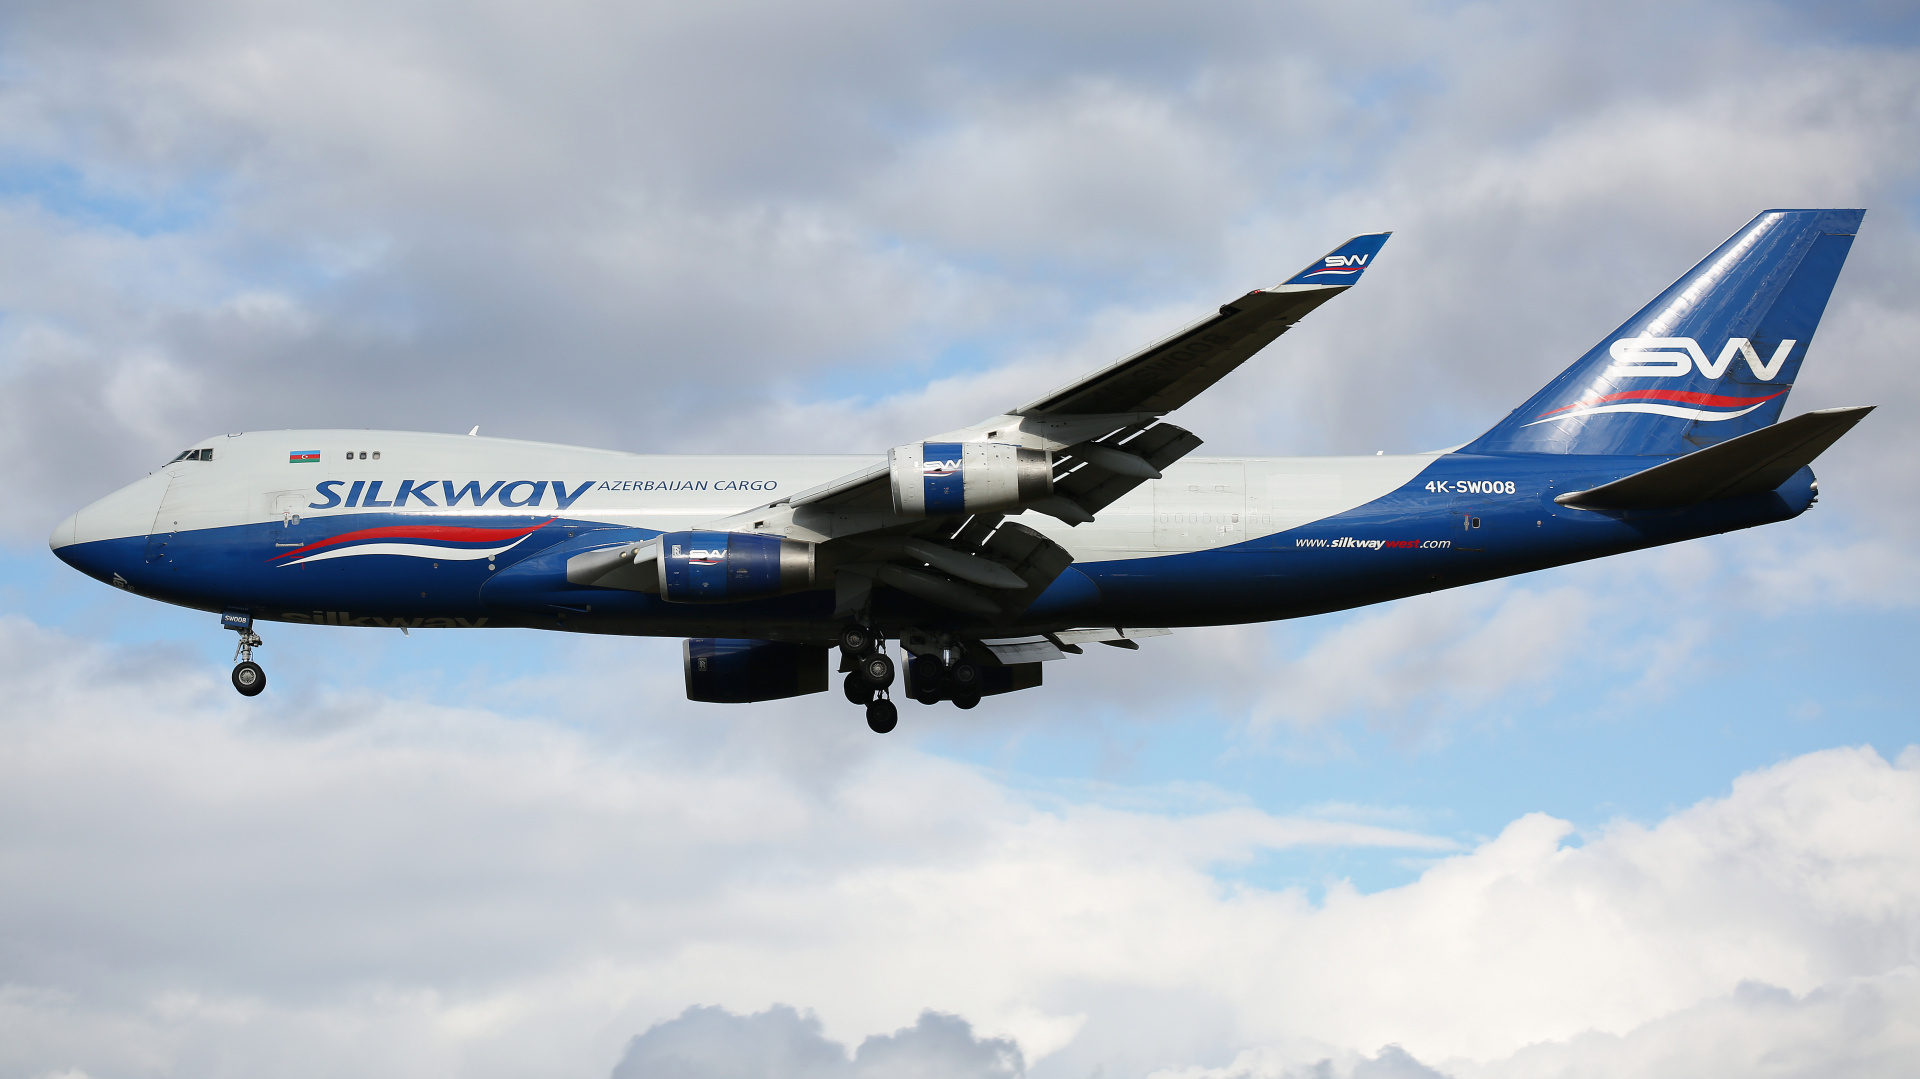 4K-SW008 (Samoloty » Spotting na EPWA » Boeing 747-400F » Silk Way West Airlines)